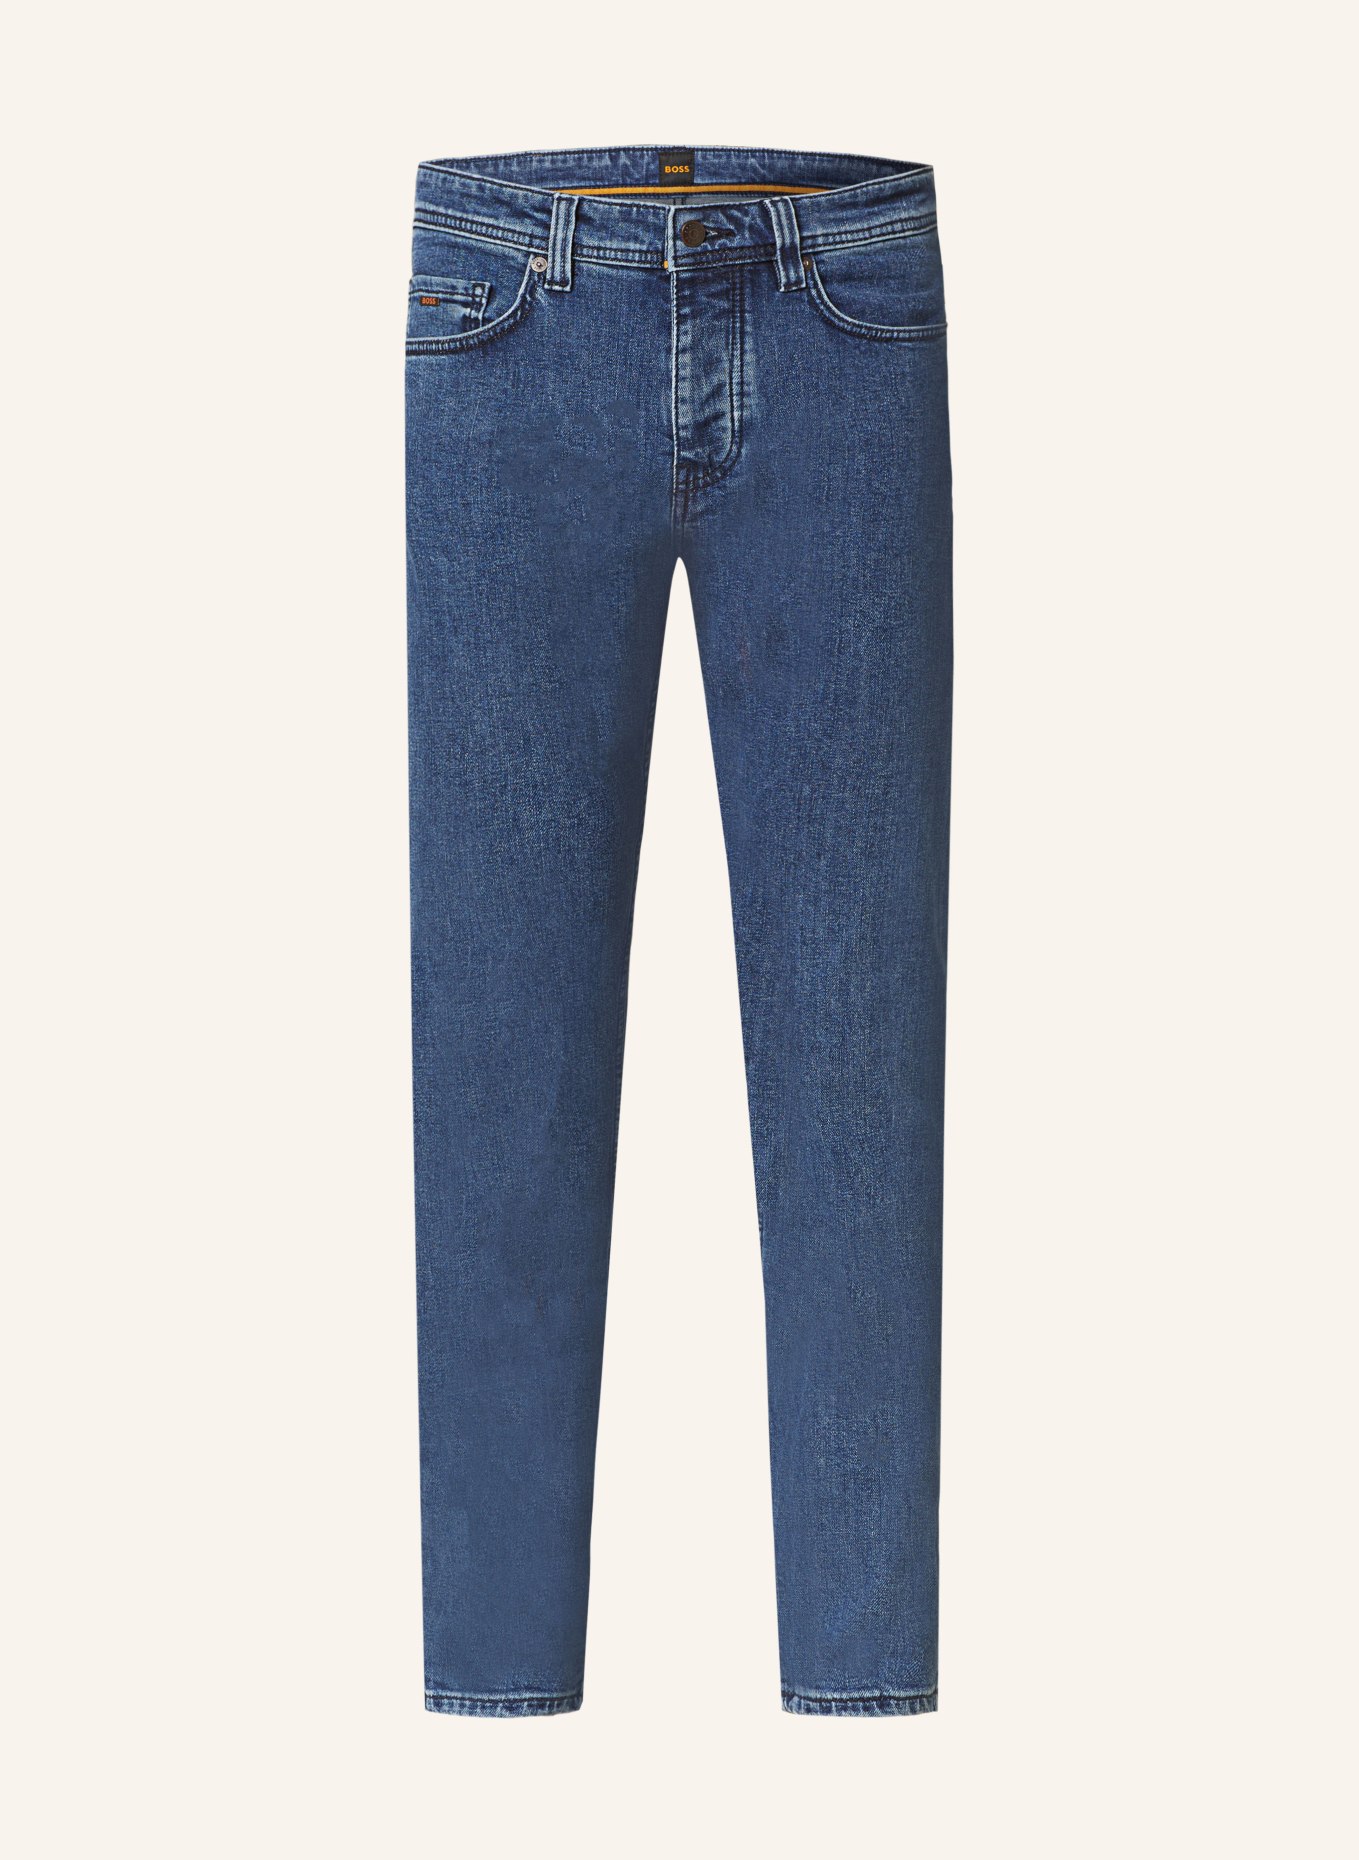 BOSS Jeans TABER Tapered Fit, Farbe: 421 MEDIUM BLUE (Bild 1)